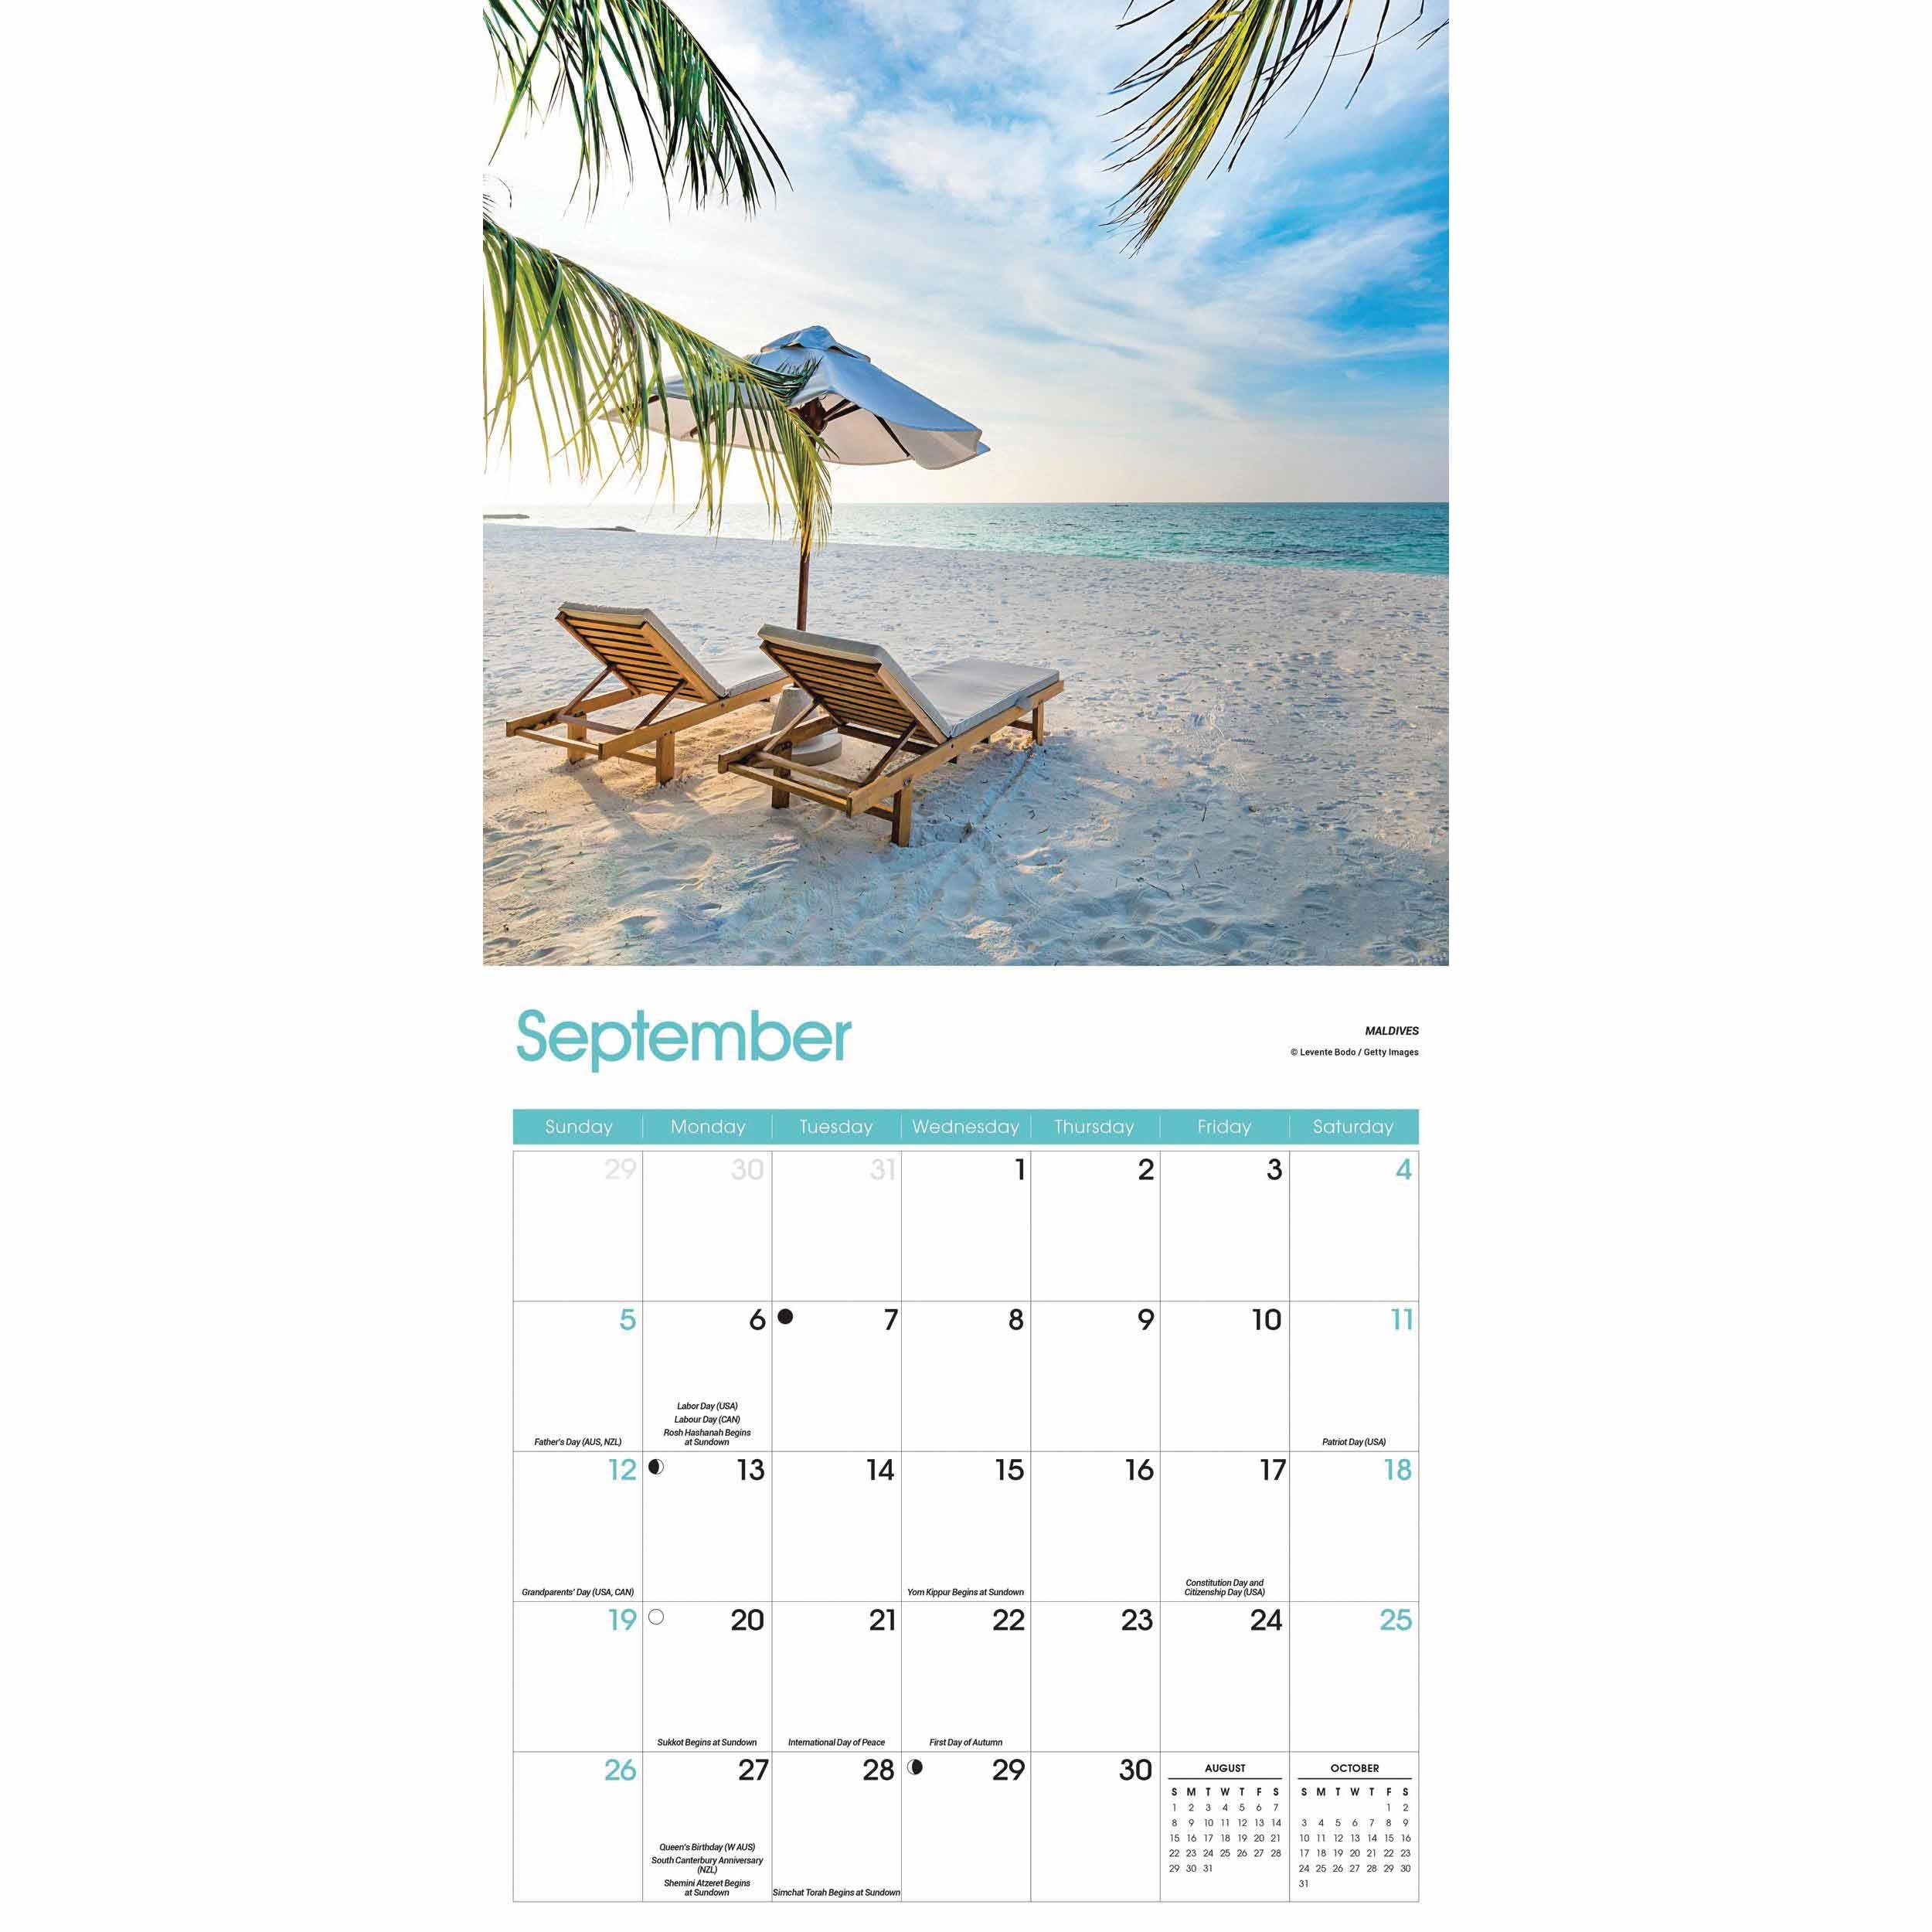 Beaches Calendar 2021 At Calendar Club